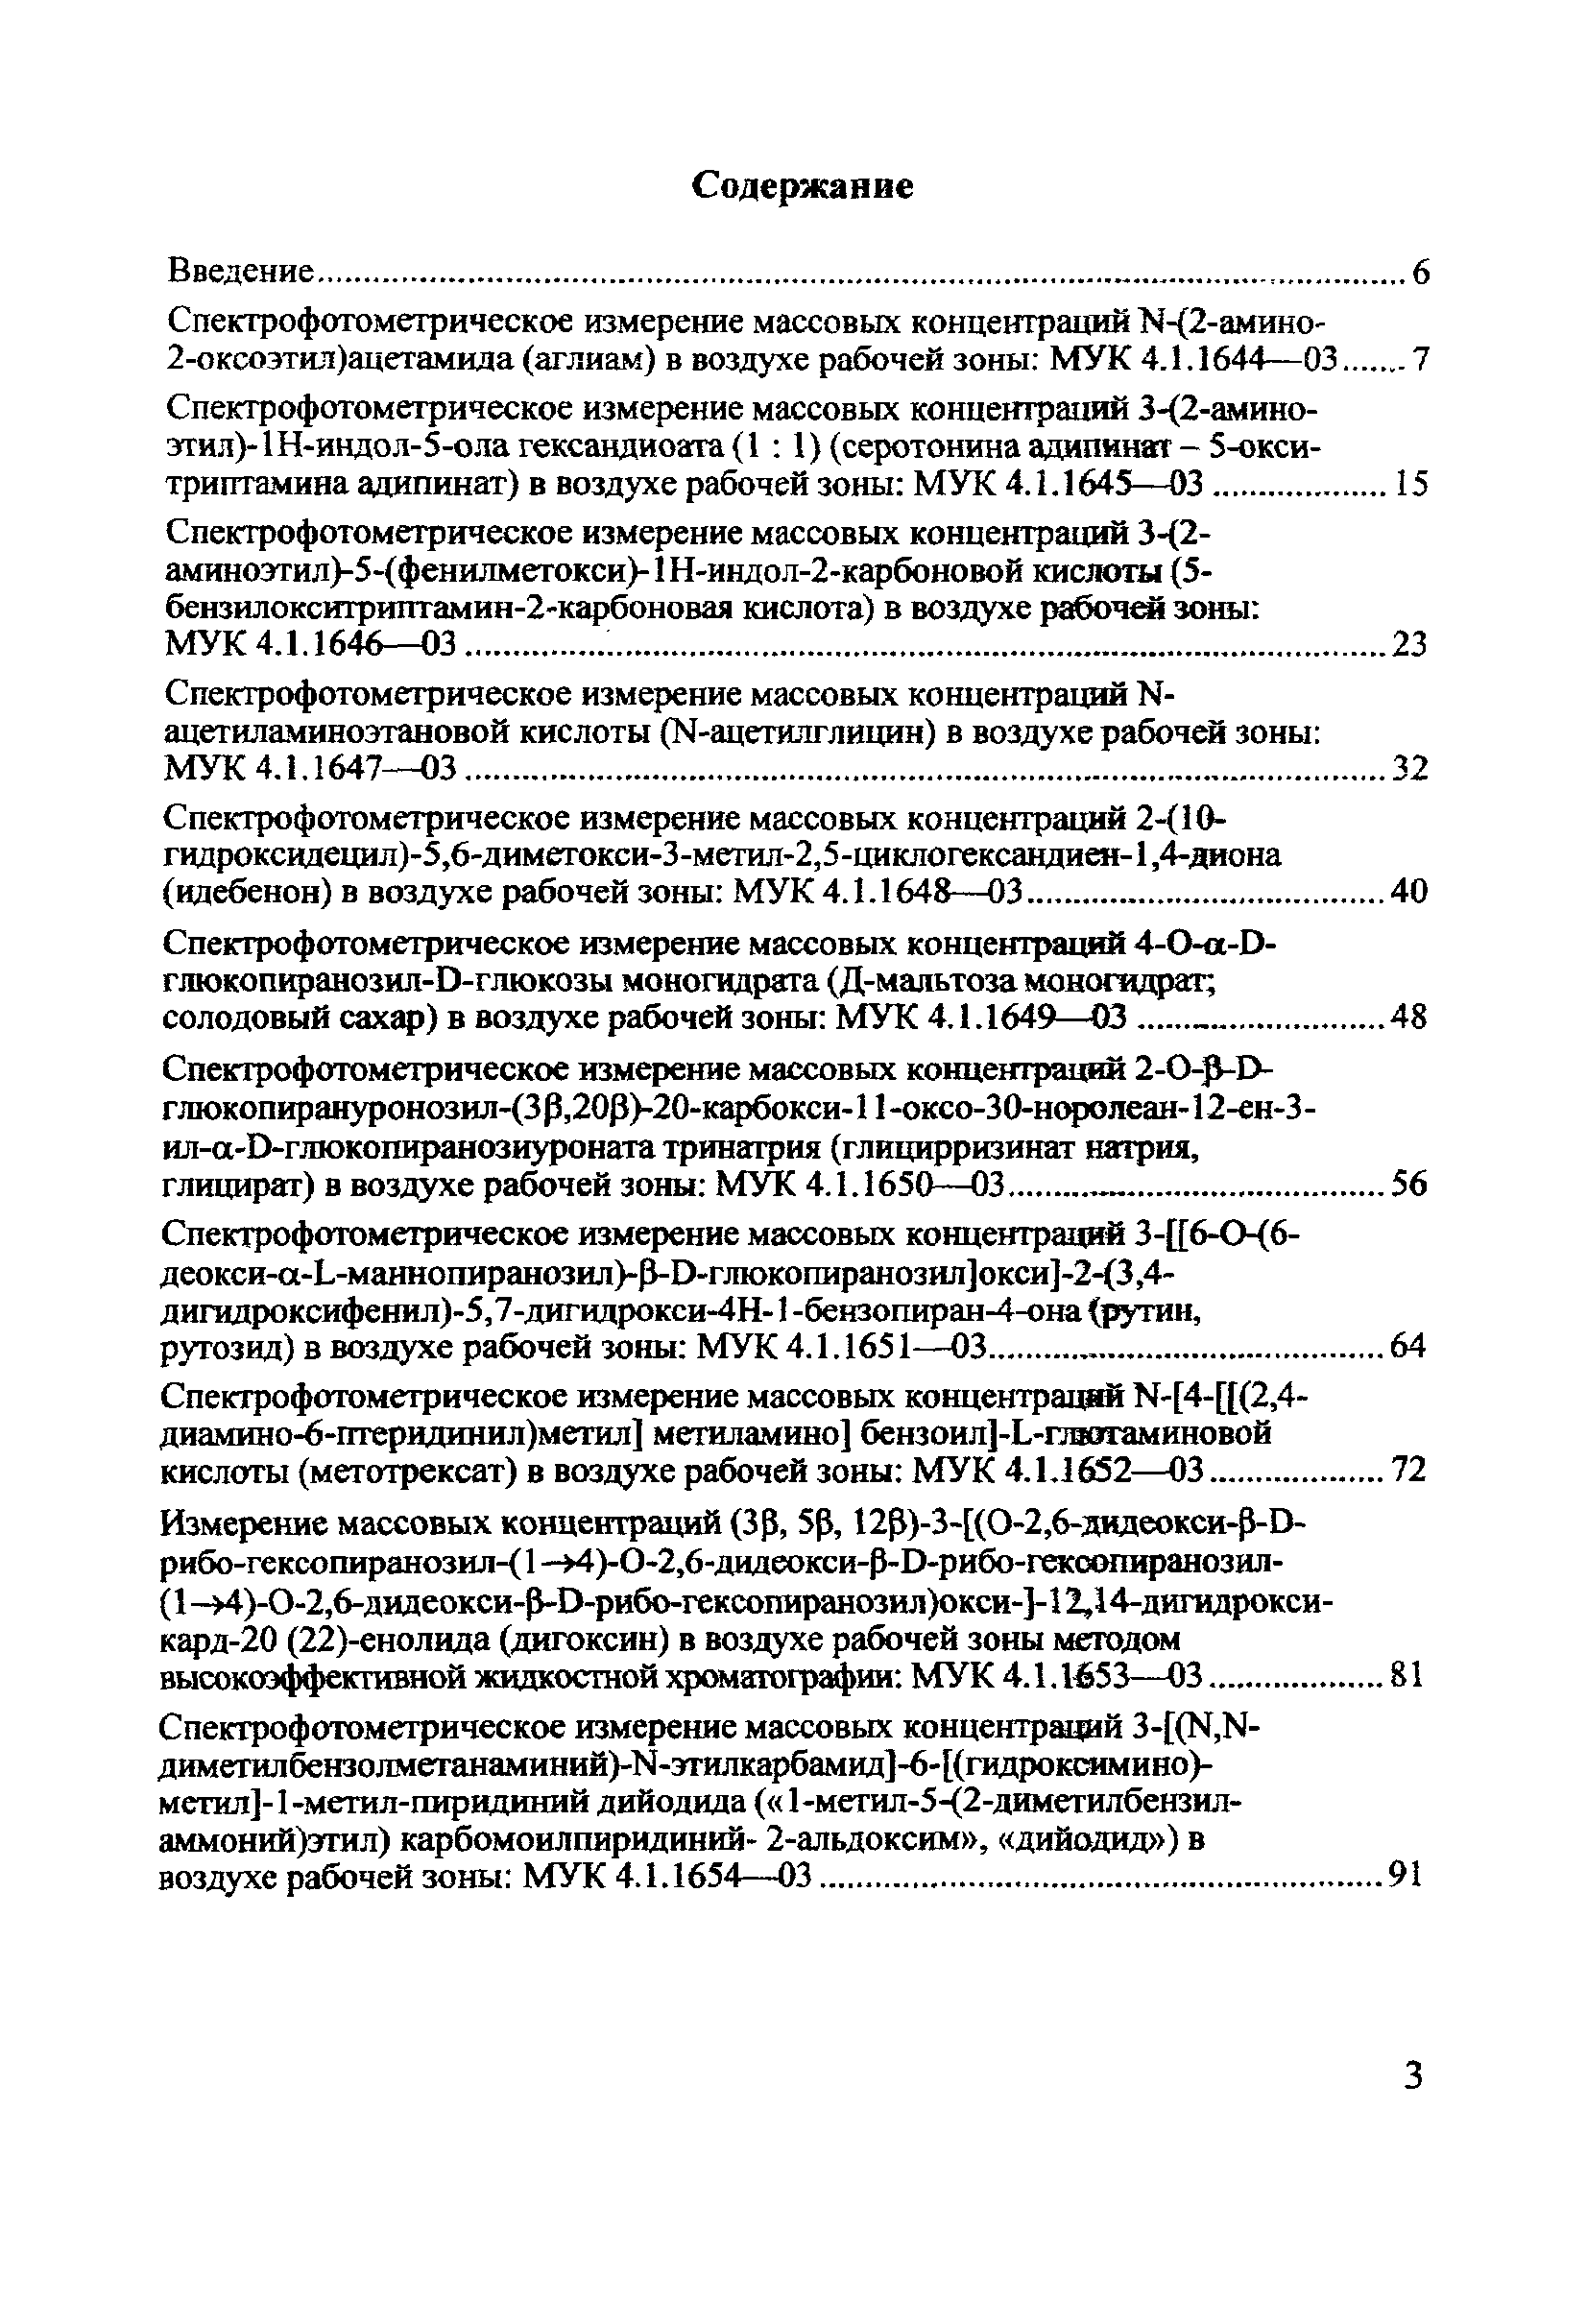 МУК 4.1.1656-03